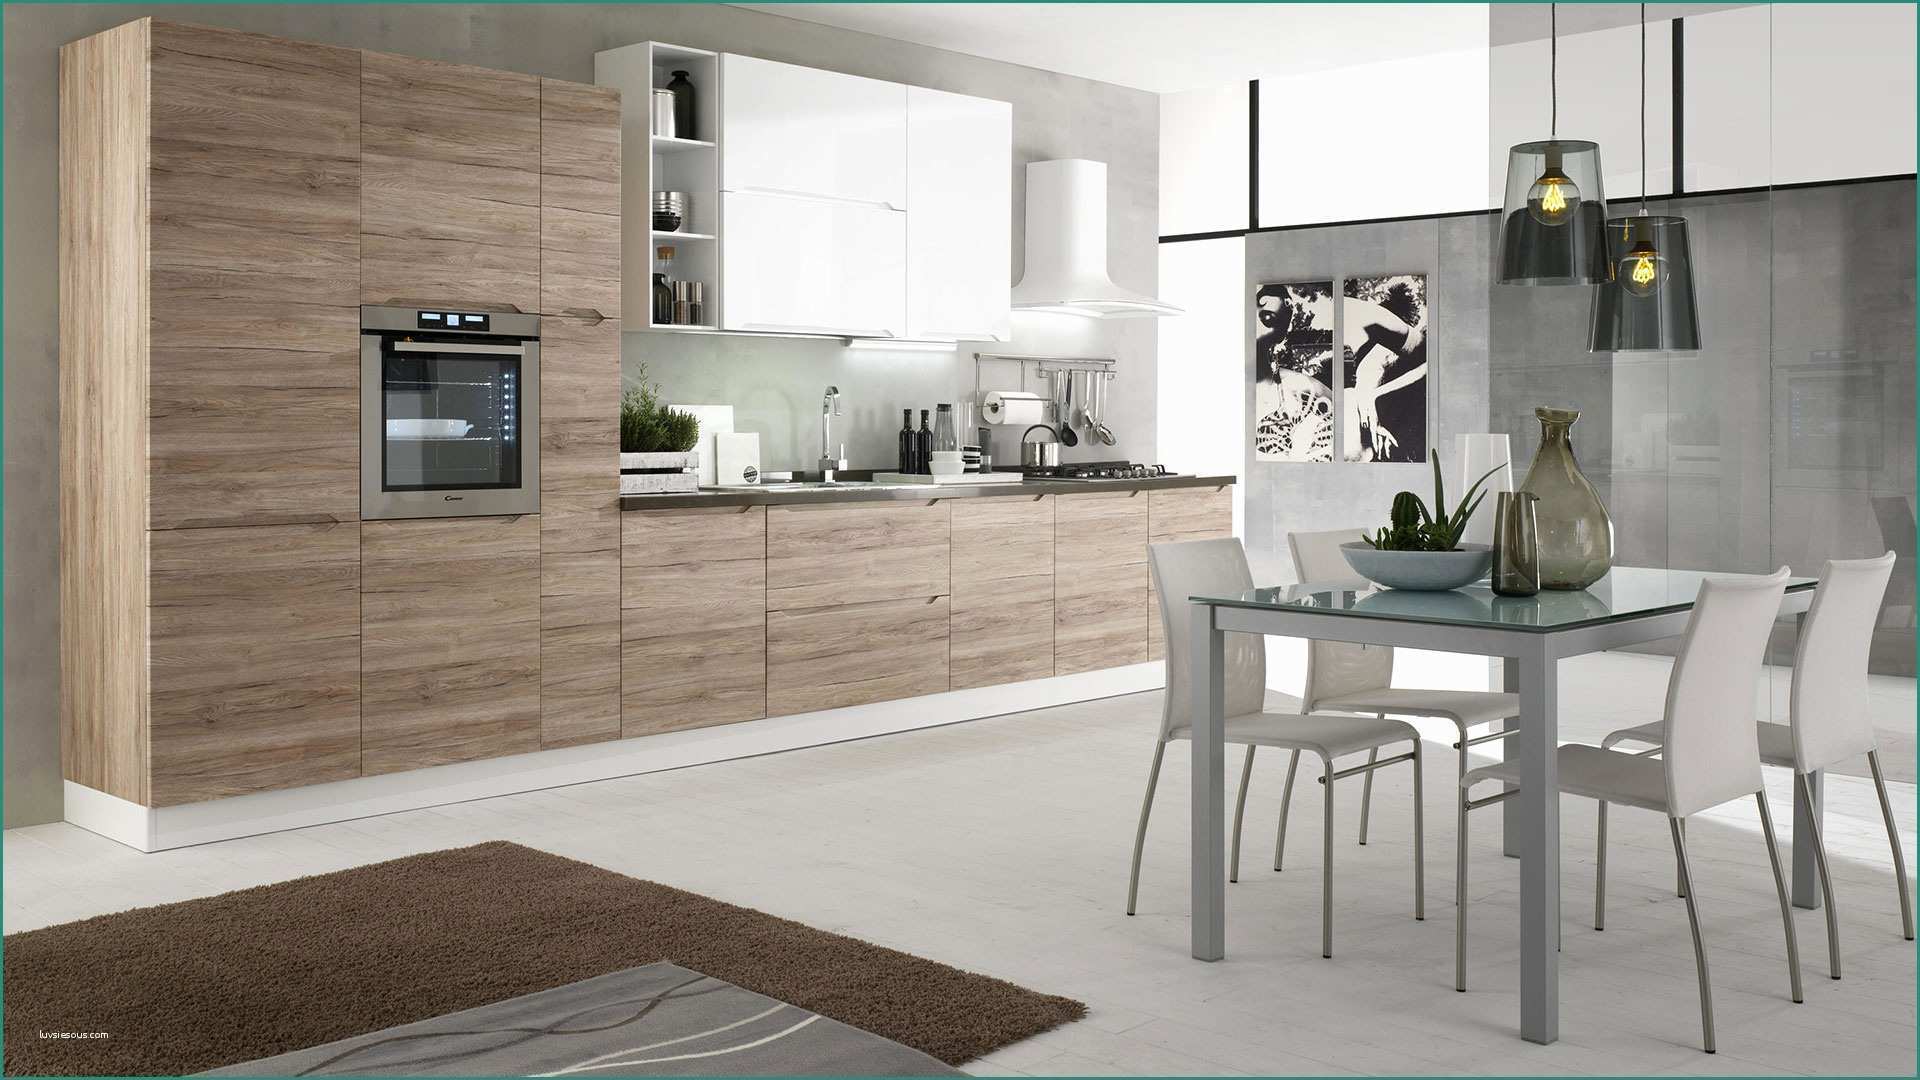 Cucina Con Dispensa E Immagini Di Cucine Moderne Excellent soggiorno Open Space soggiorno